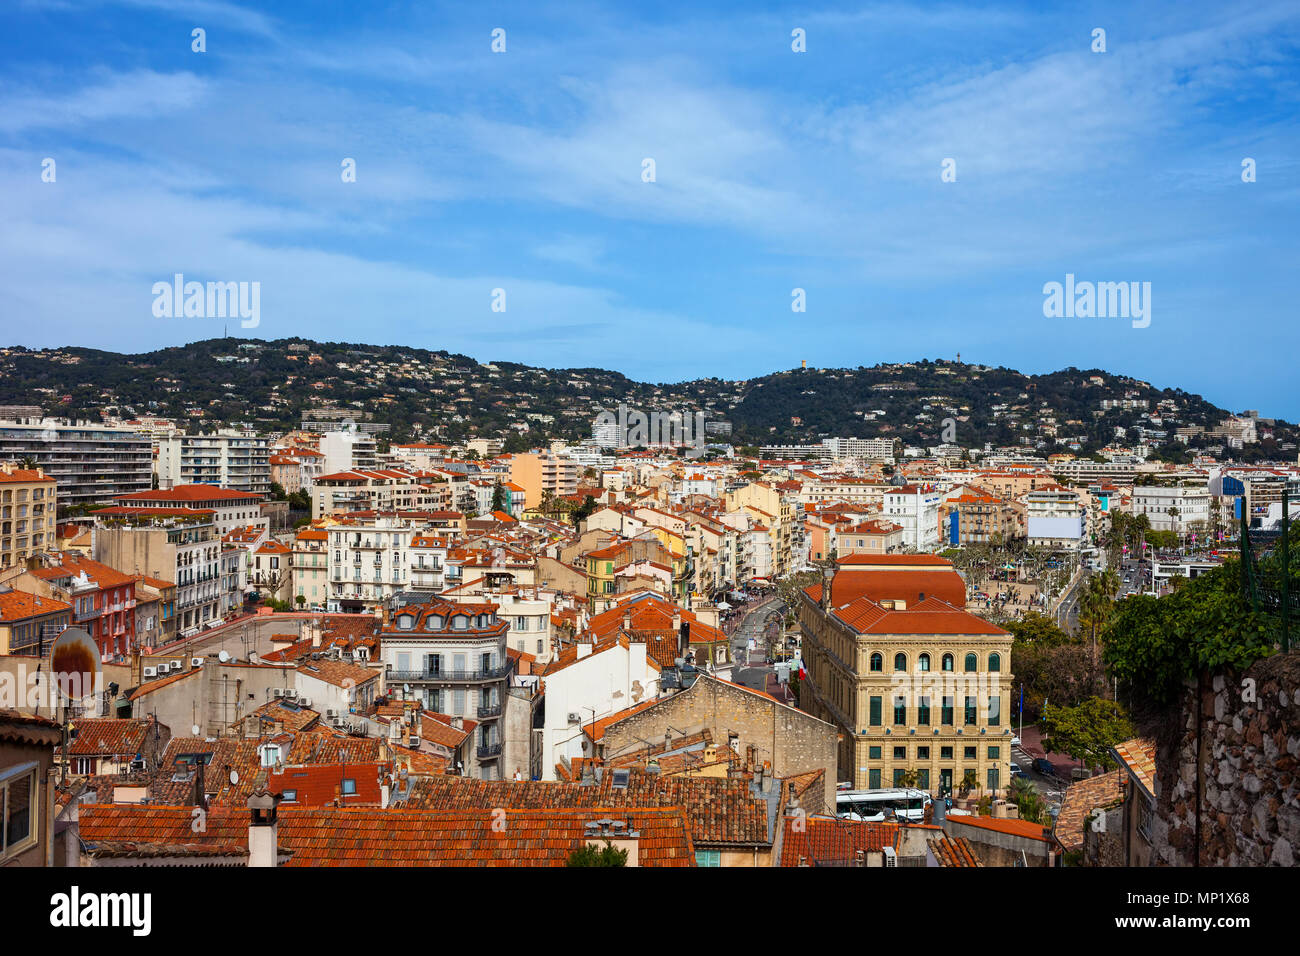 Città di Cannes cityscape in Francia, ampia vista sopra la località balneare sulla Costa Azzurra - Cote d'Azur Foto Stock